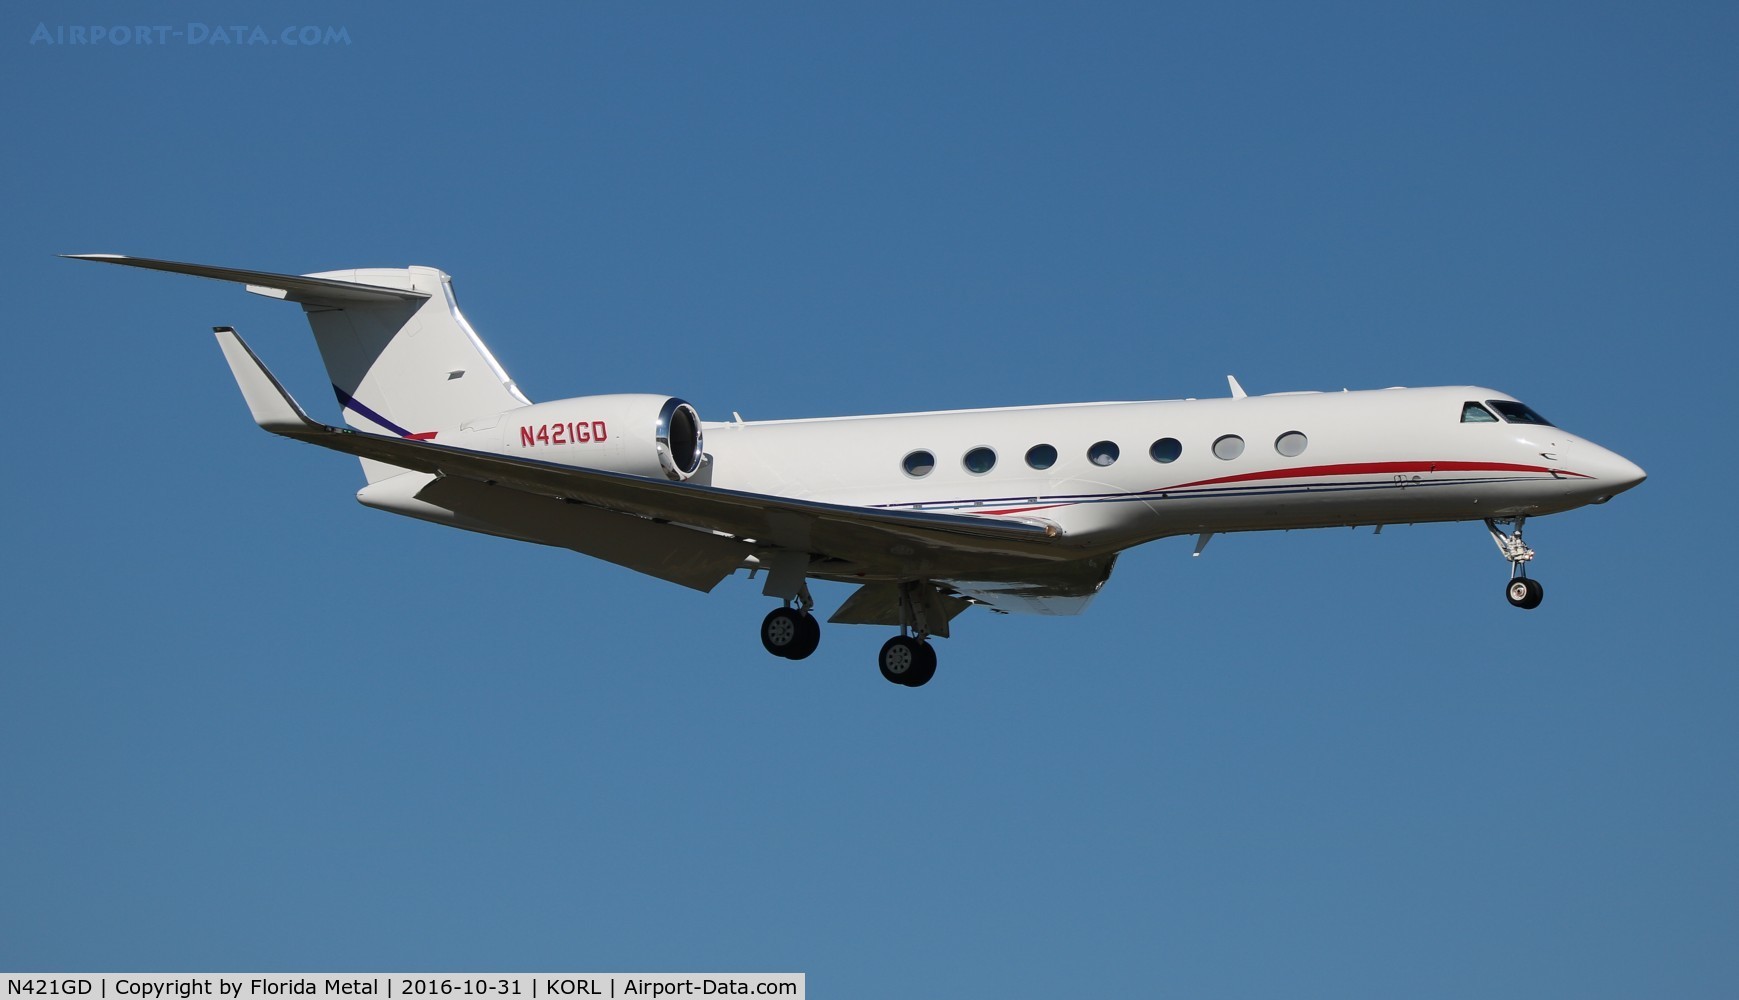 N421GD, 2013 Gulfstream Aerospace GV-SP (G550) C/N 5421, G550 zx